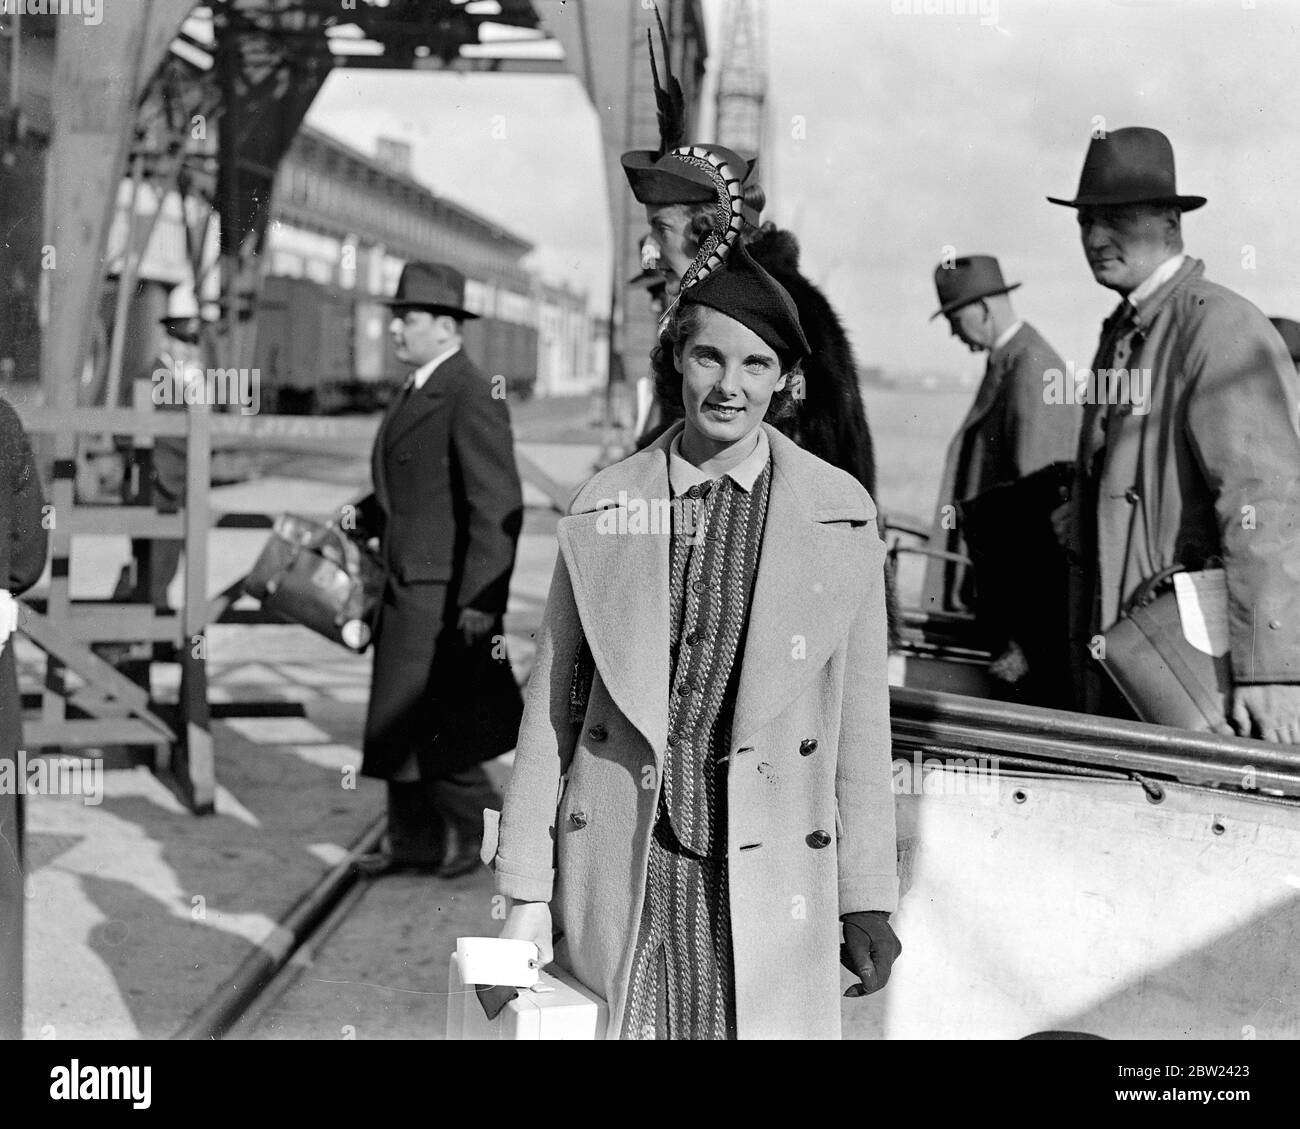 Mlle Kay Stammers, joueur de tennis britannique, est arrivée à Southampton sur le paquebot normand d'Amérique. Spectacles photo: Miss Kay, avec une plume dans son chapeau quand elle a atterri à Southampton. 17 octobre 1938 Banque D'Images